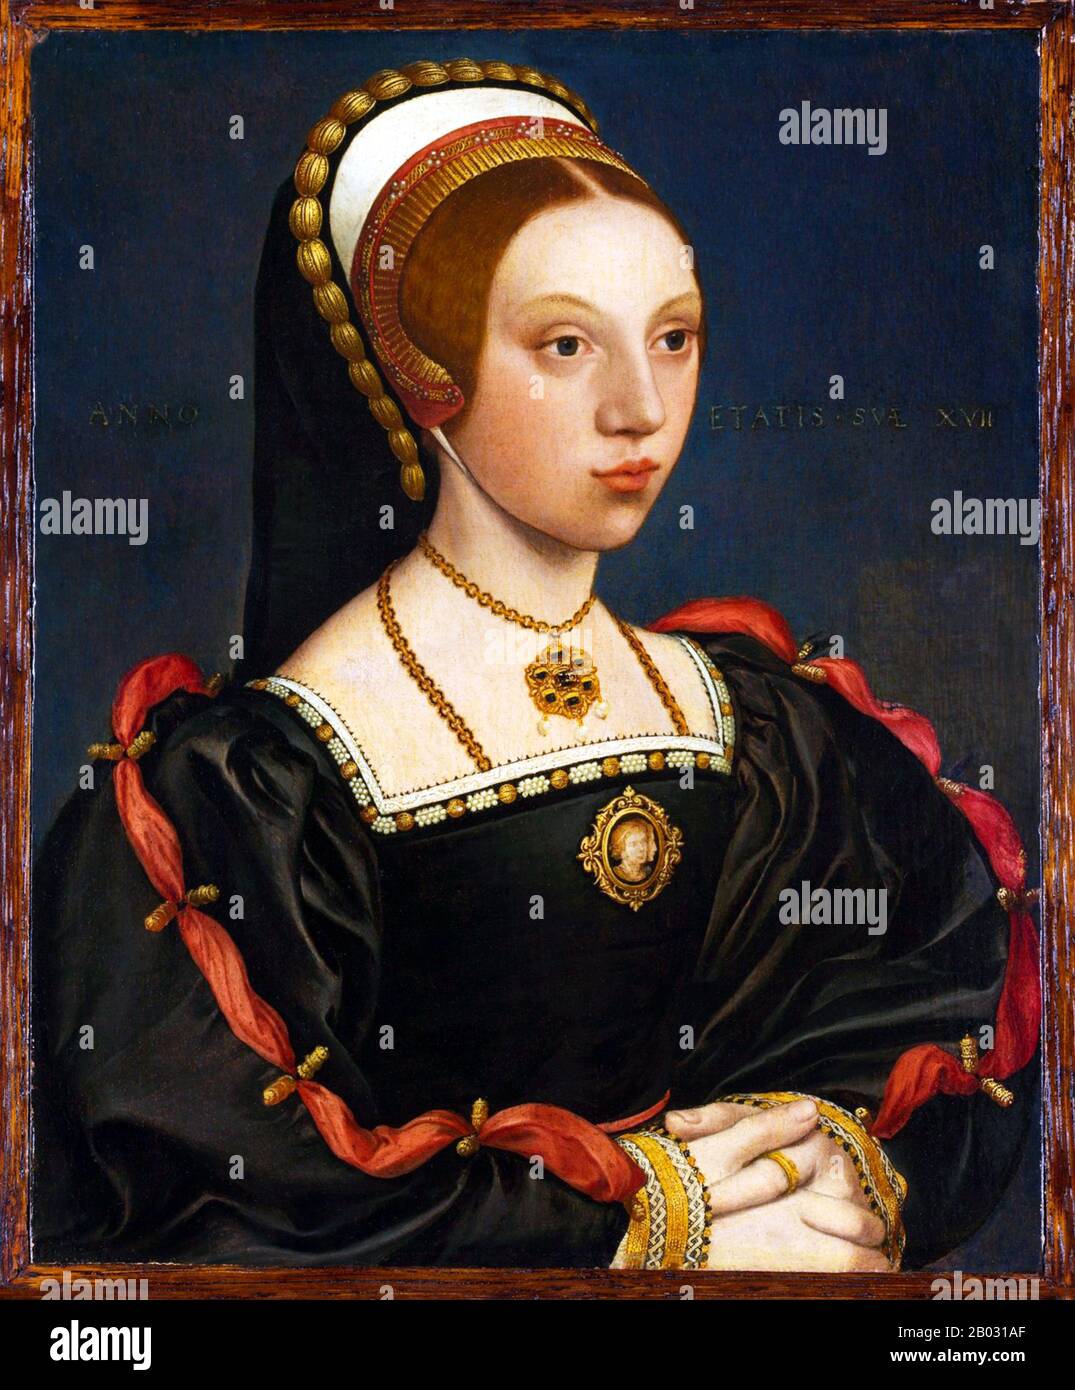 Catherine Howard (ca. 1521 - 13. Februar 1542) war von 1540 bis 1541 Königin von England, als fünfte Frau von Heinrich VIII Catherine heiratete Heinrich VIII. Am 28. Juli 1540 im Oatlands Palace in Surrey, fast unmittelbar nach der Aufhebung seiner Ehe mit Anne von Cleves. Catherine wurde nach weniger als zwei Jahren Ehe mit Henry wegen Verrats enthauptet, indem sie Ehebruch begeht, während sie mit dem König verheiratet war. Stockfoto